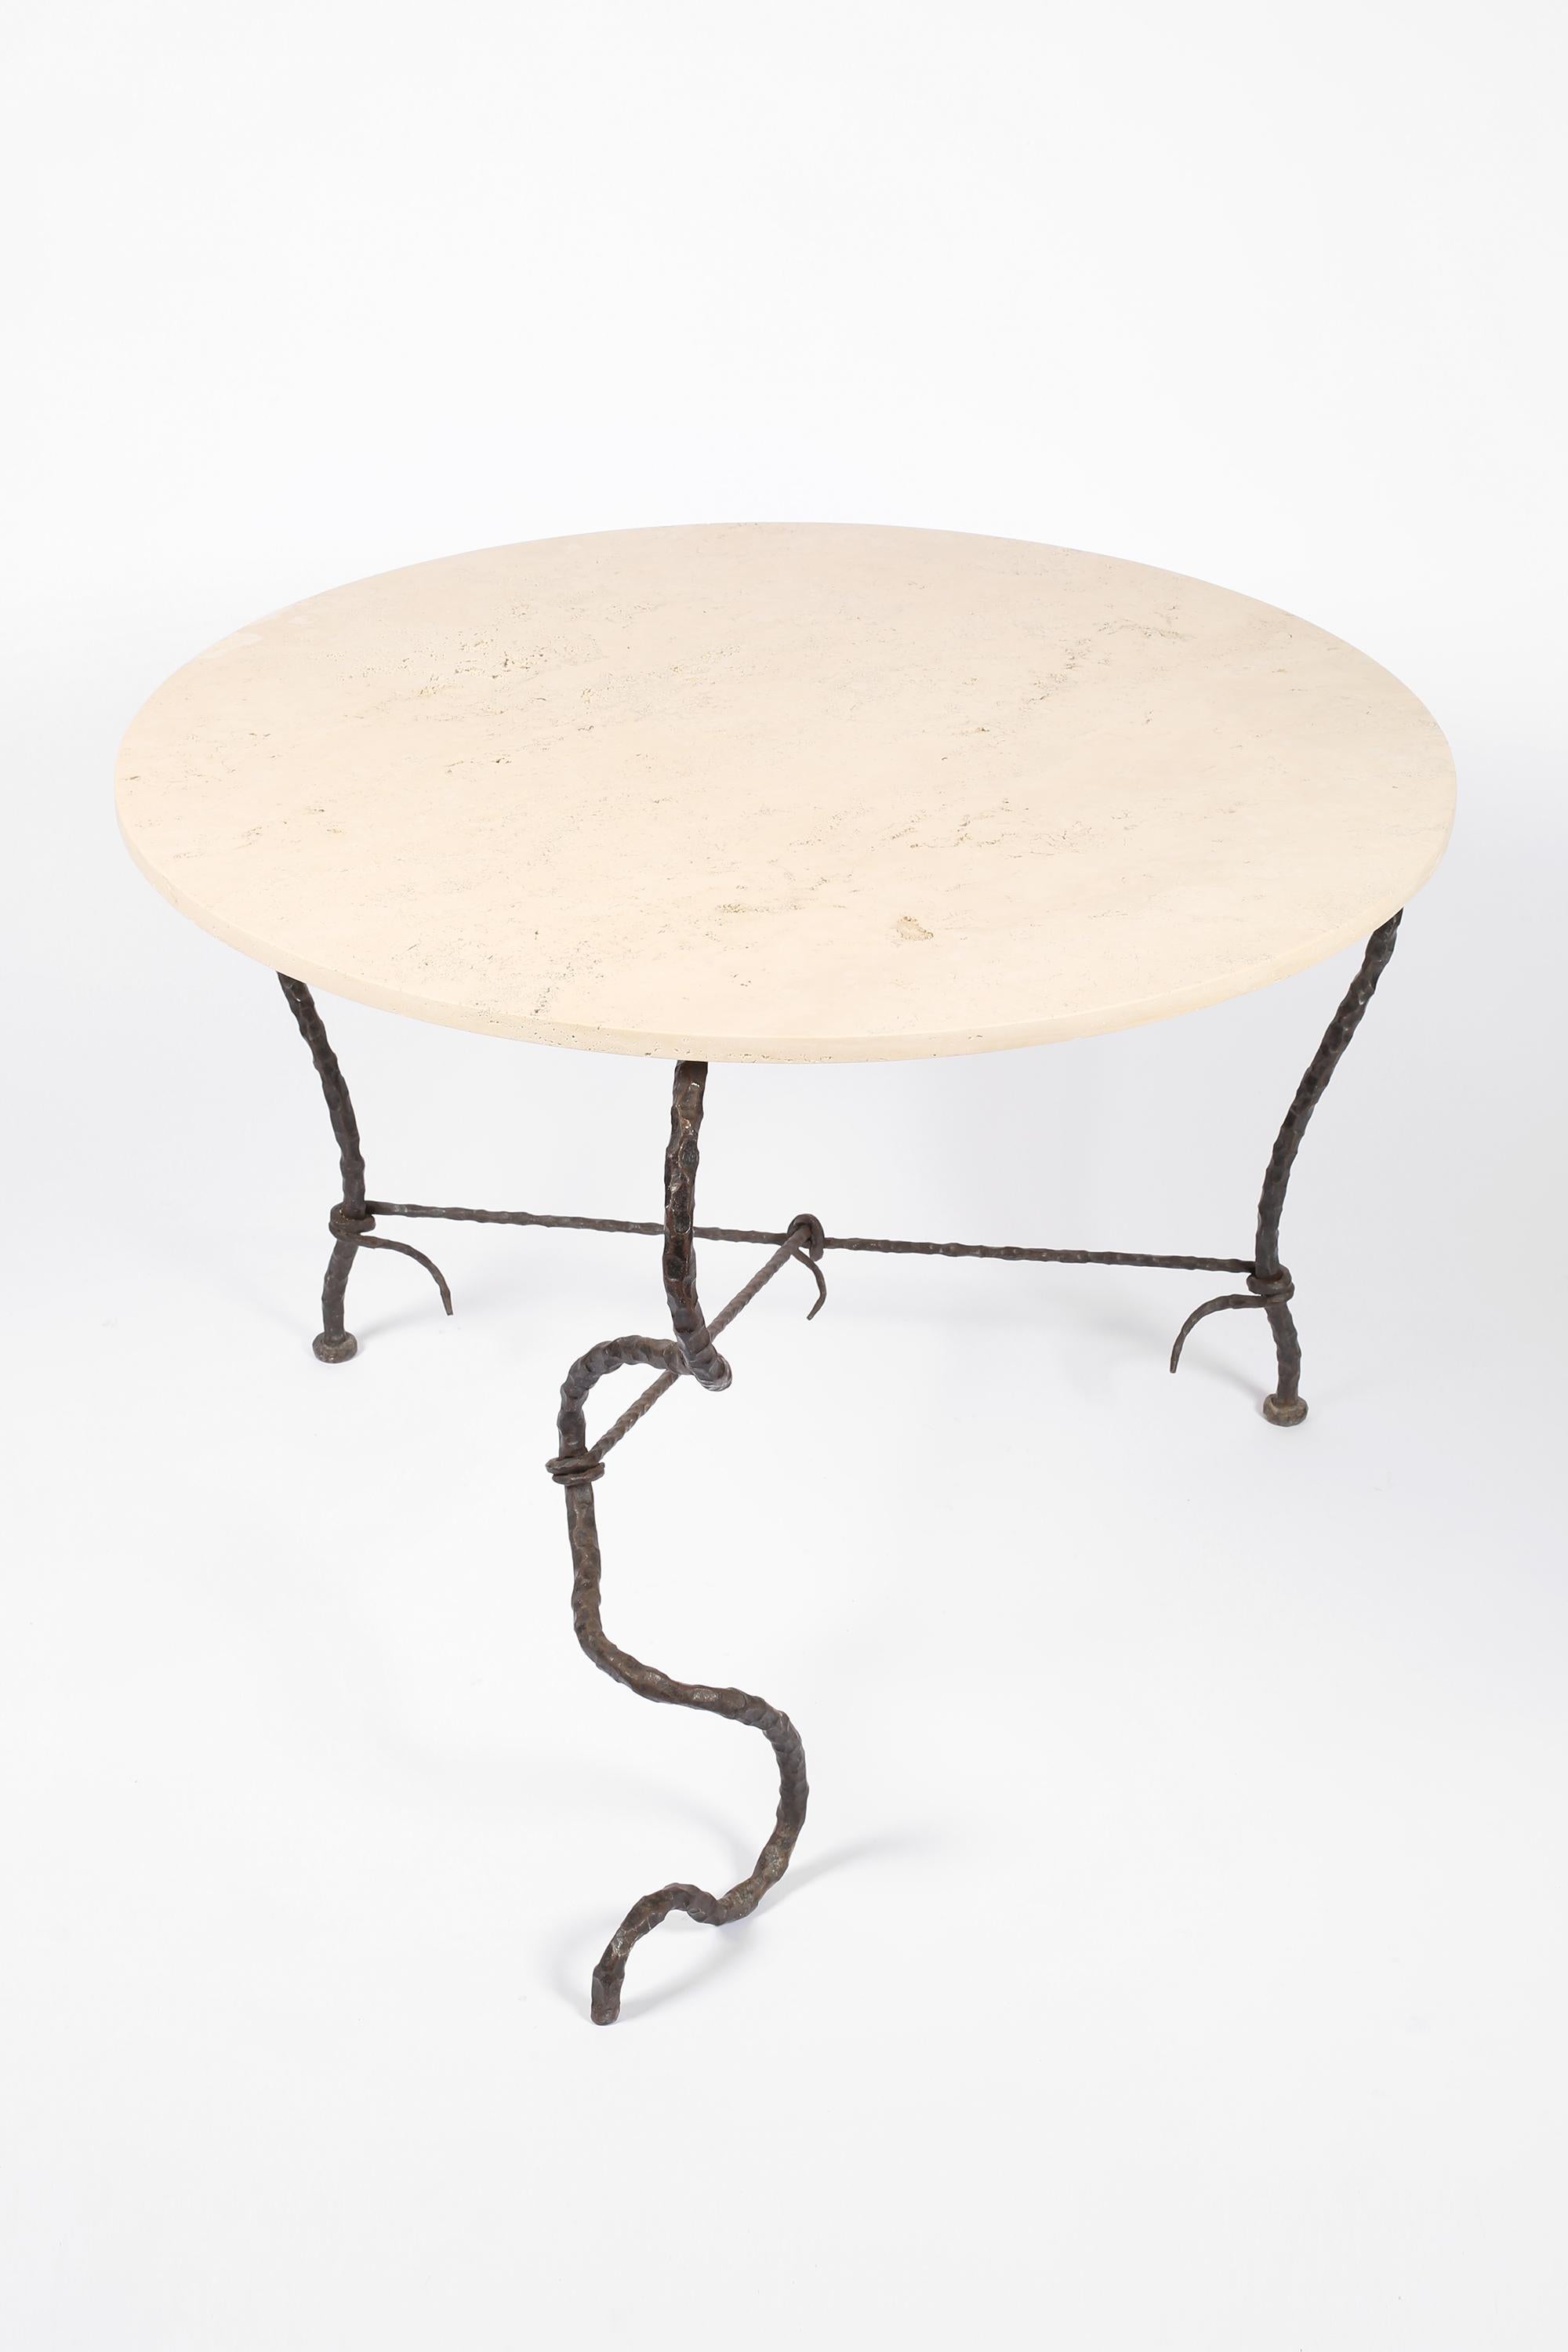 Une table centrale ou de salle à manger surréaliste en fer forgé avec un plateau circulaire en travertin. La base organique, en forme de serpent, est reliée par des supports enroulés à la manière de Diego Giacometti. Français, c. 1950.